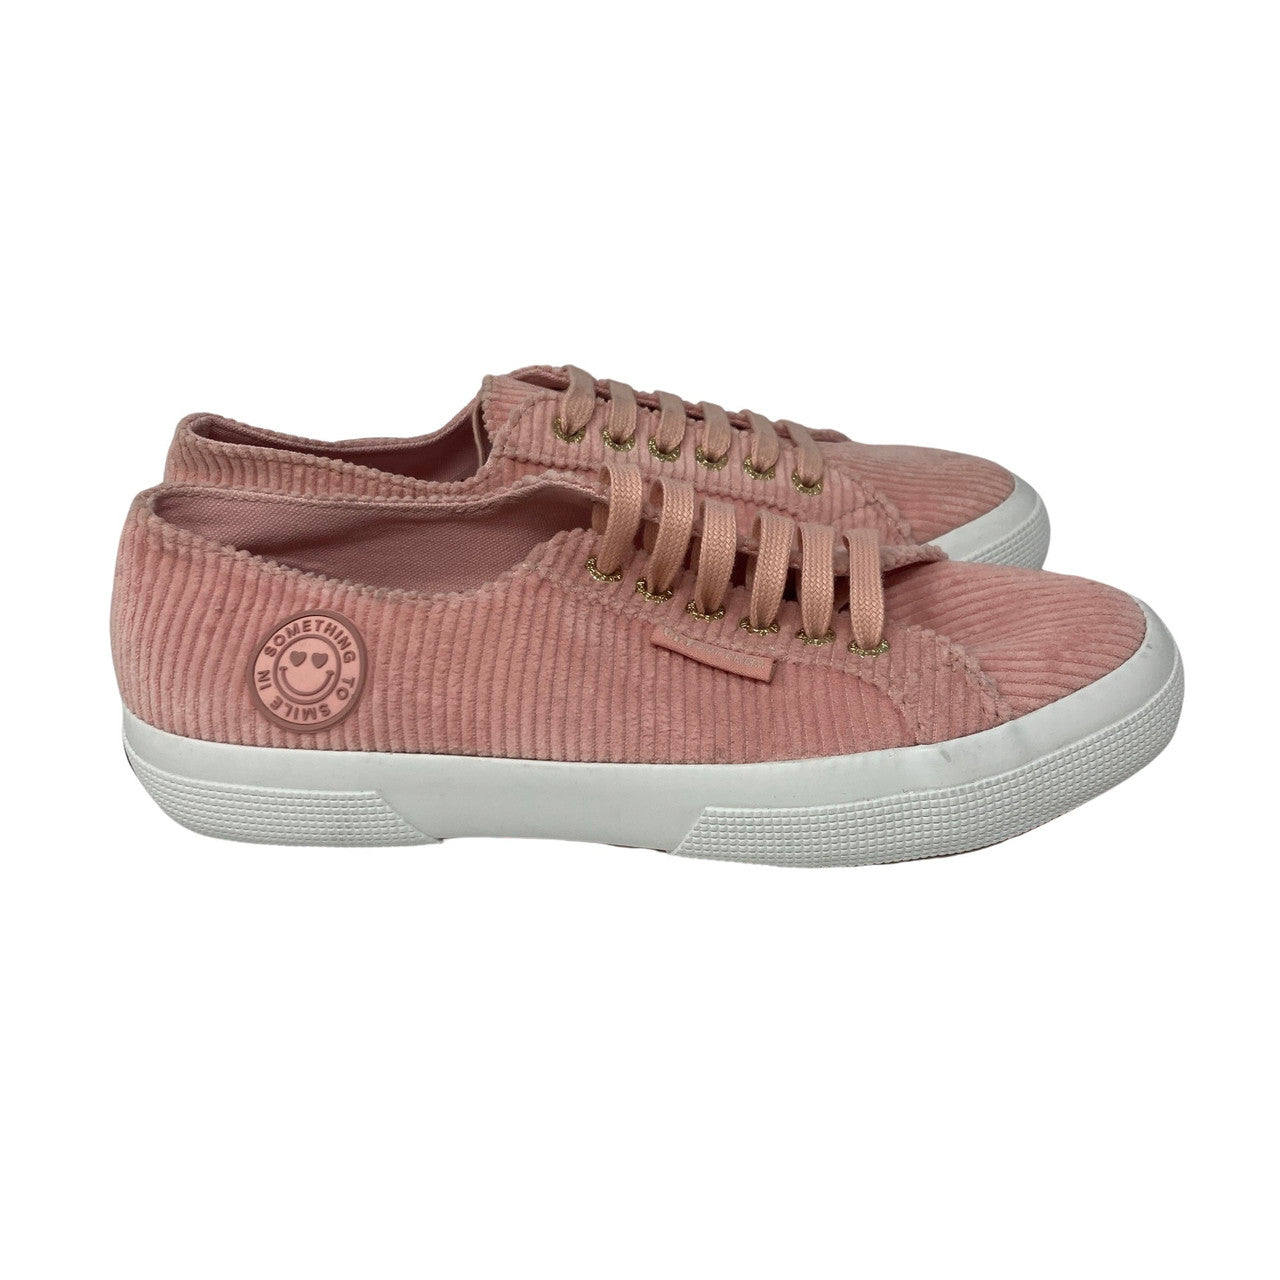 Superga X Something Navy Pink Cord Sneakers-thumbnail